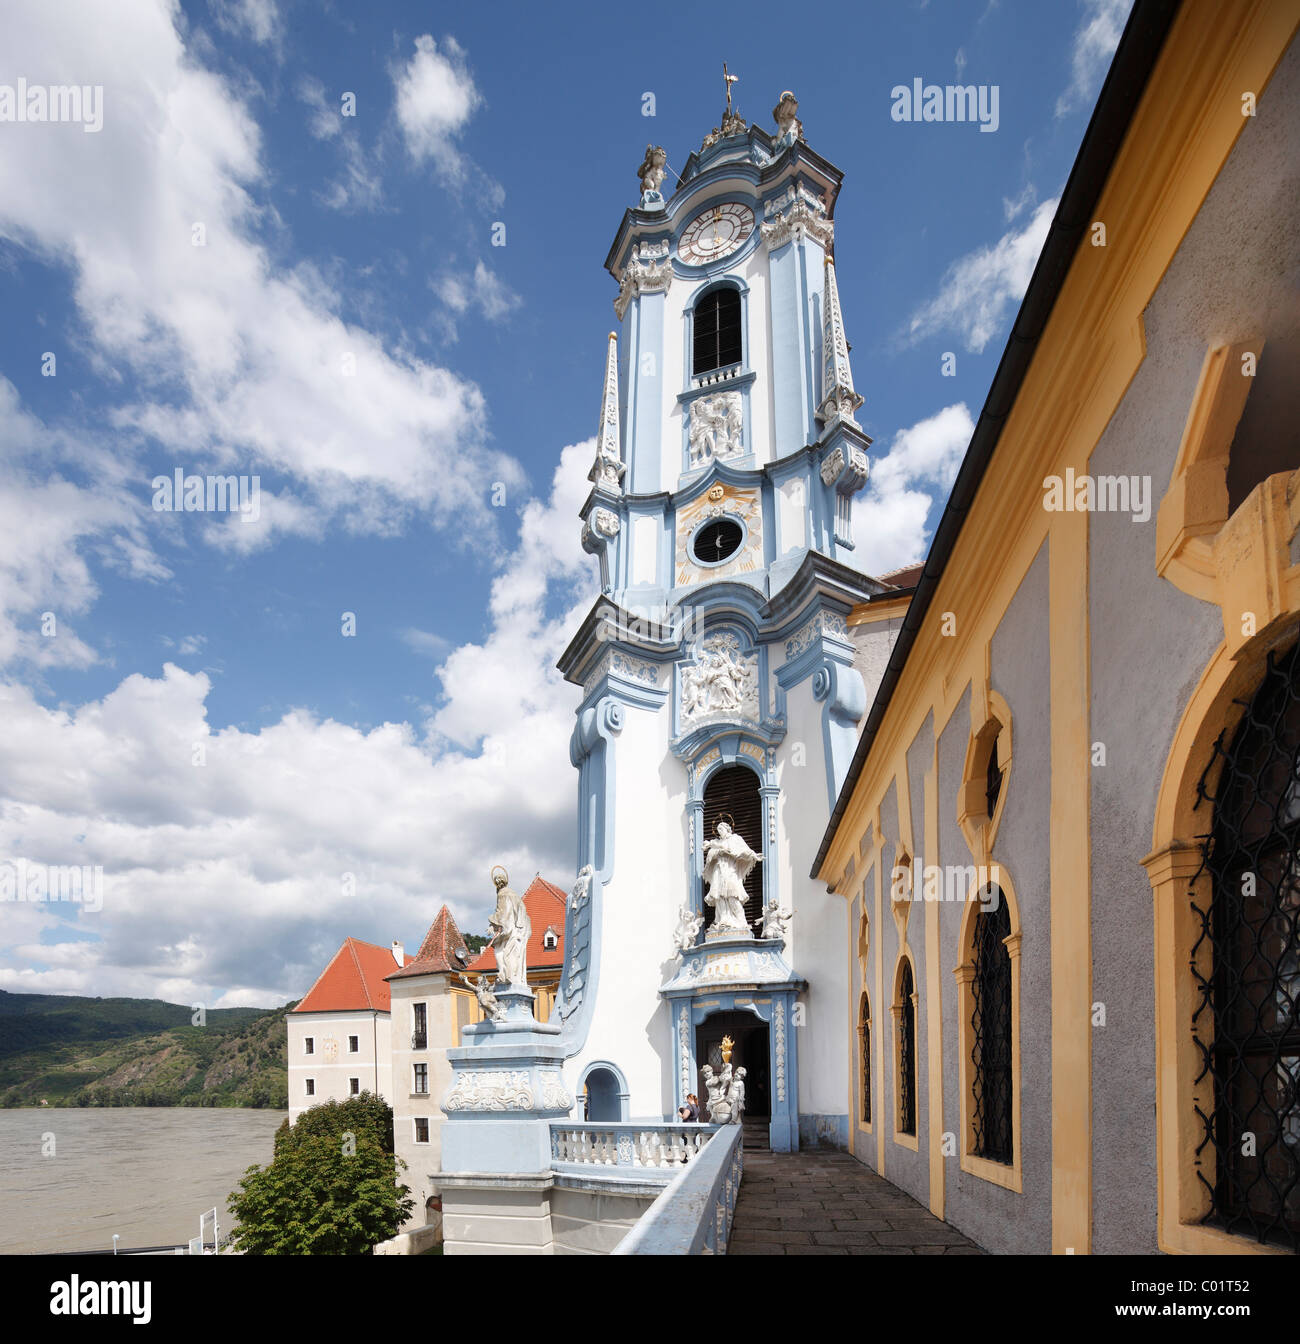 Spire of the abbey church, Duernstein, Wachau valley, Waldviertel region, Lower Austria, Austria, Europe Stock Photo